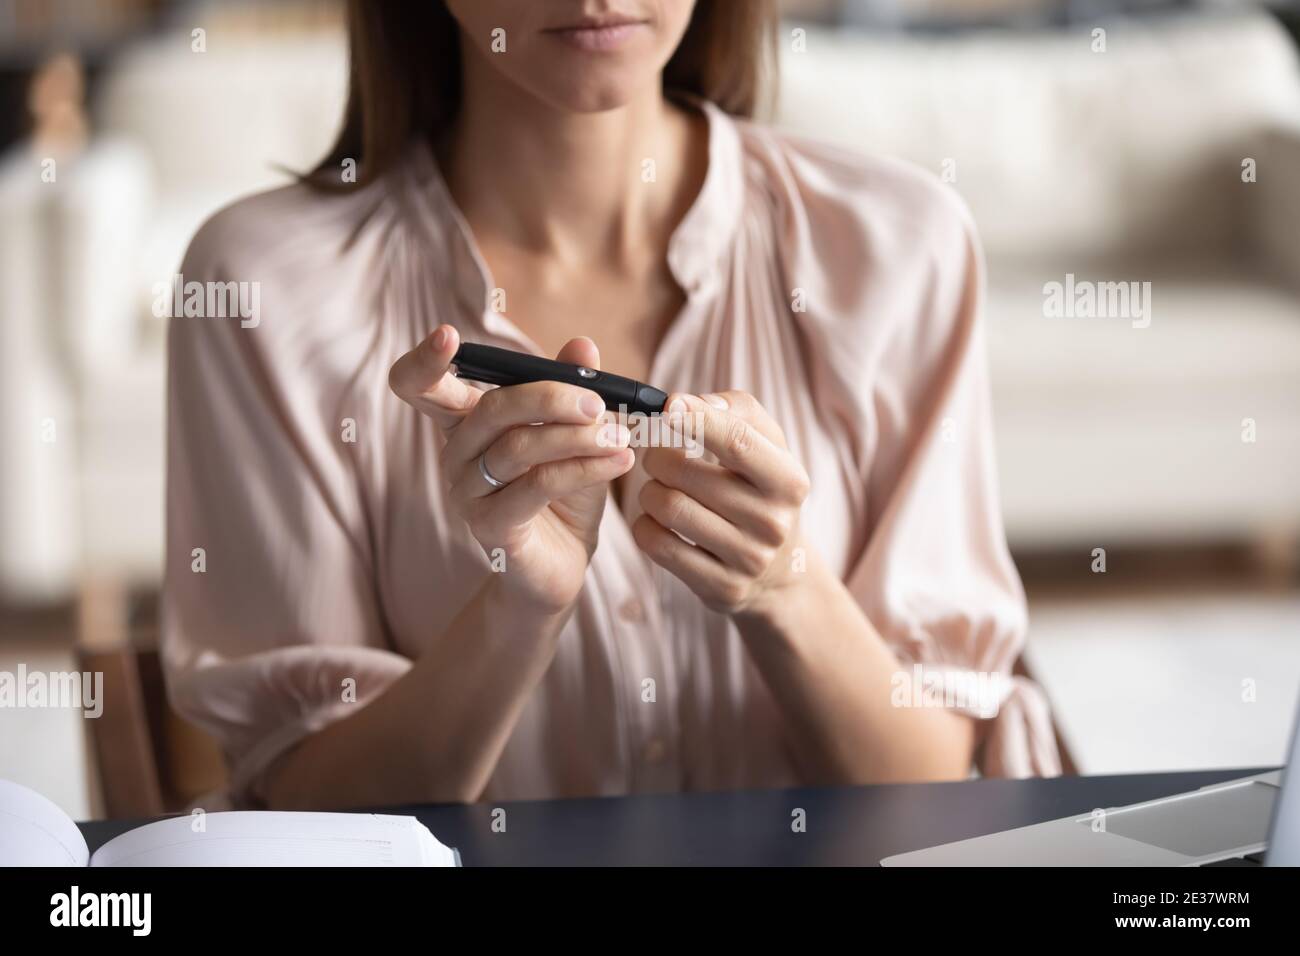 Gros plan femme mesurant le niveau de glucose, à l'aide d'un stylo lancet Banque D'Images